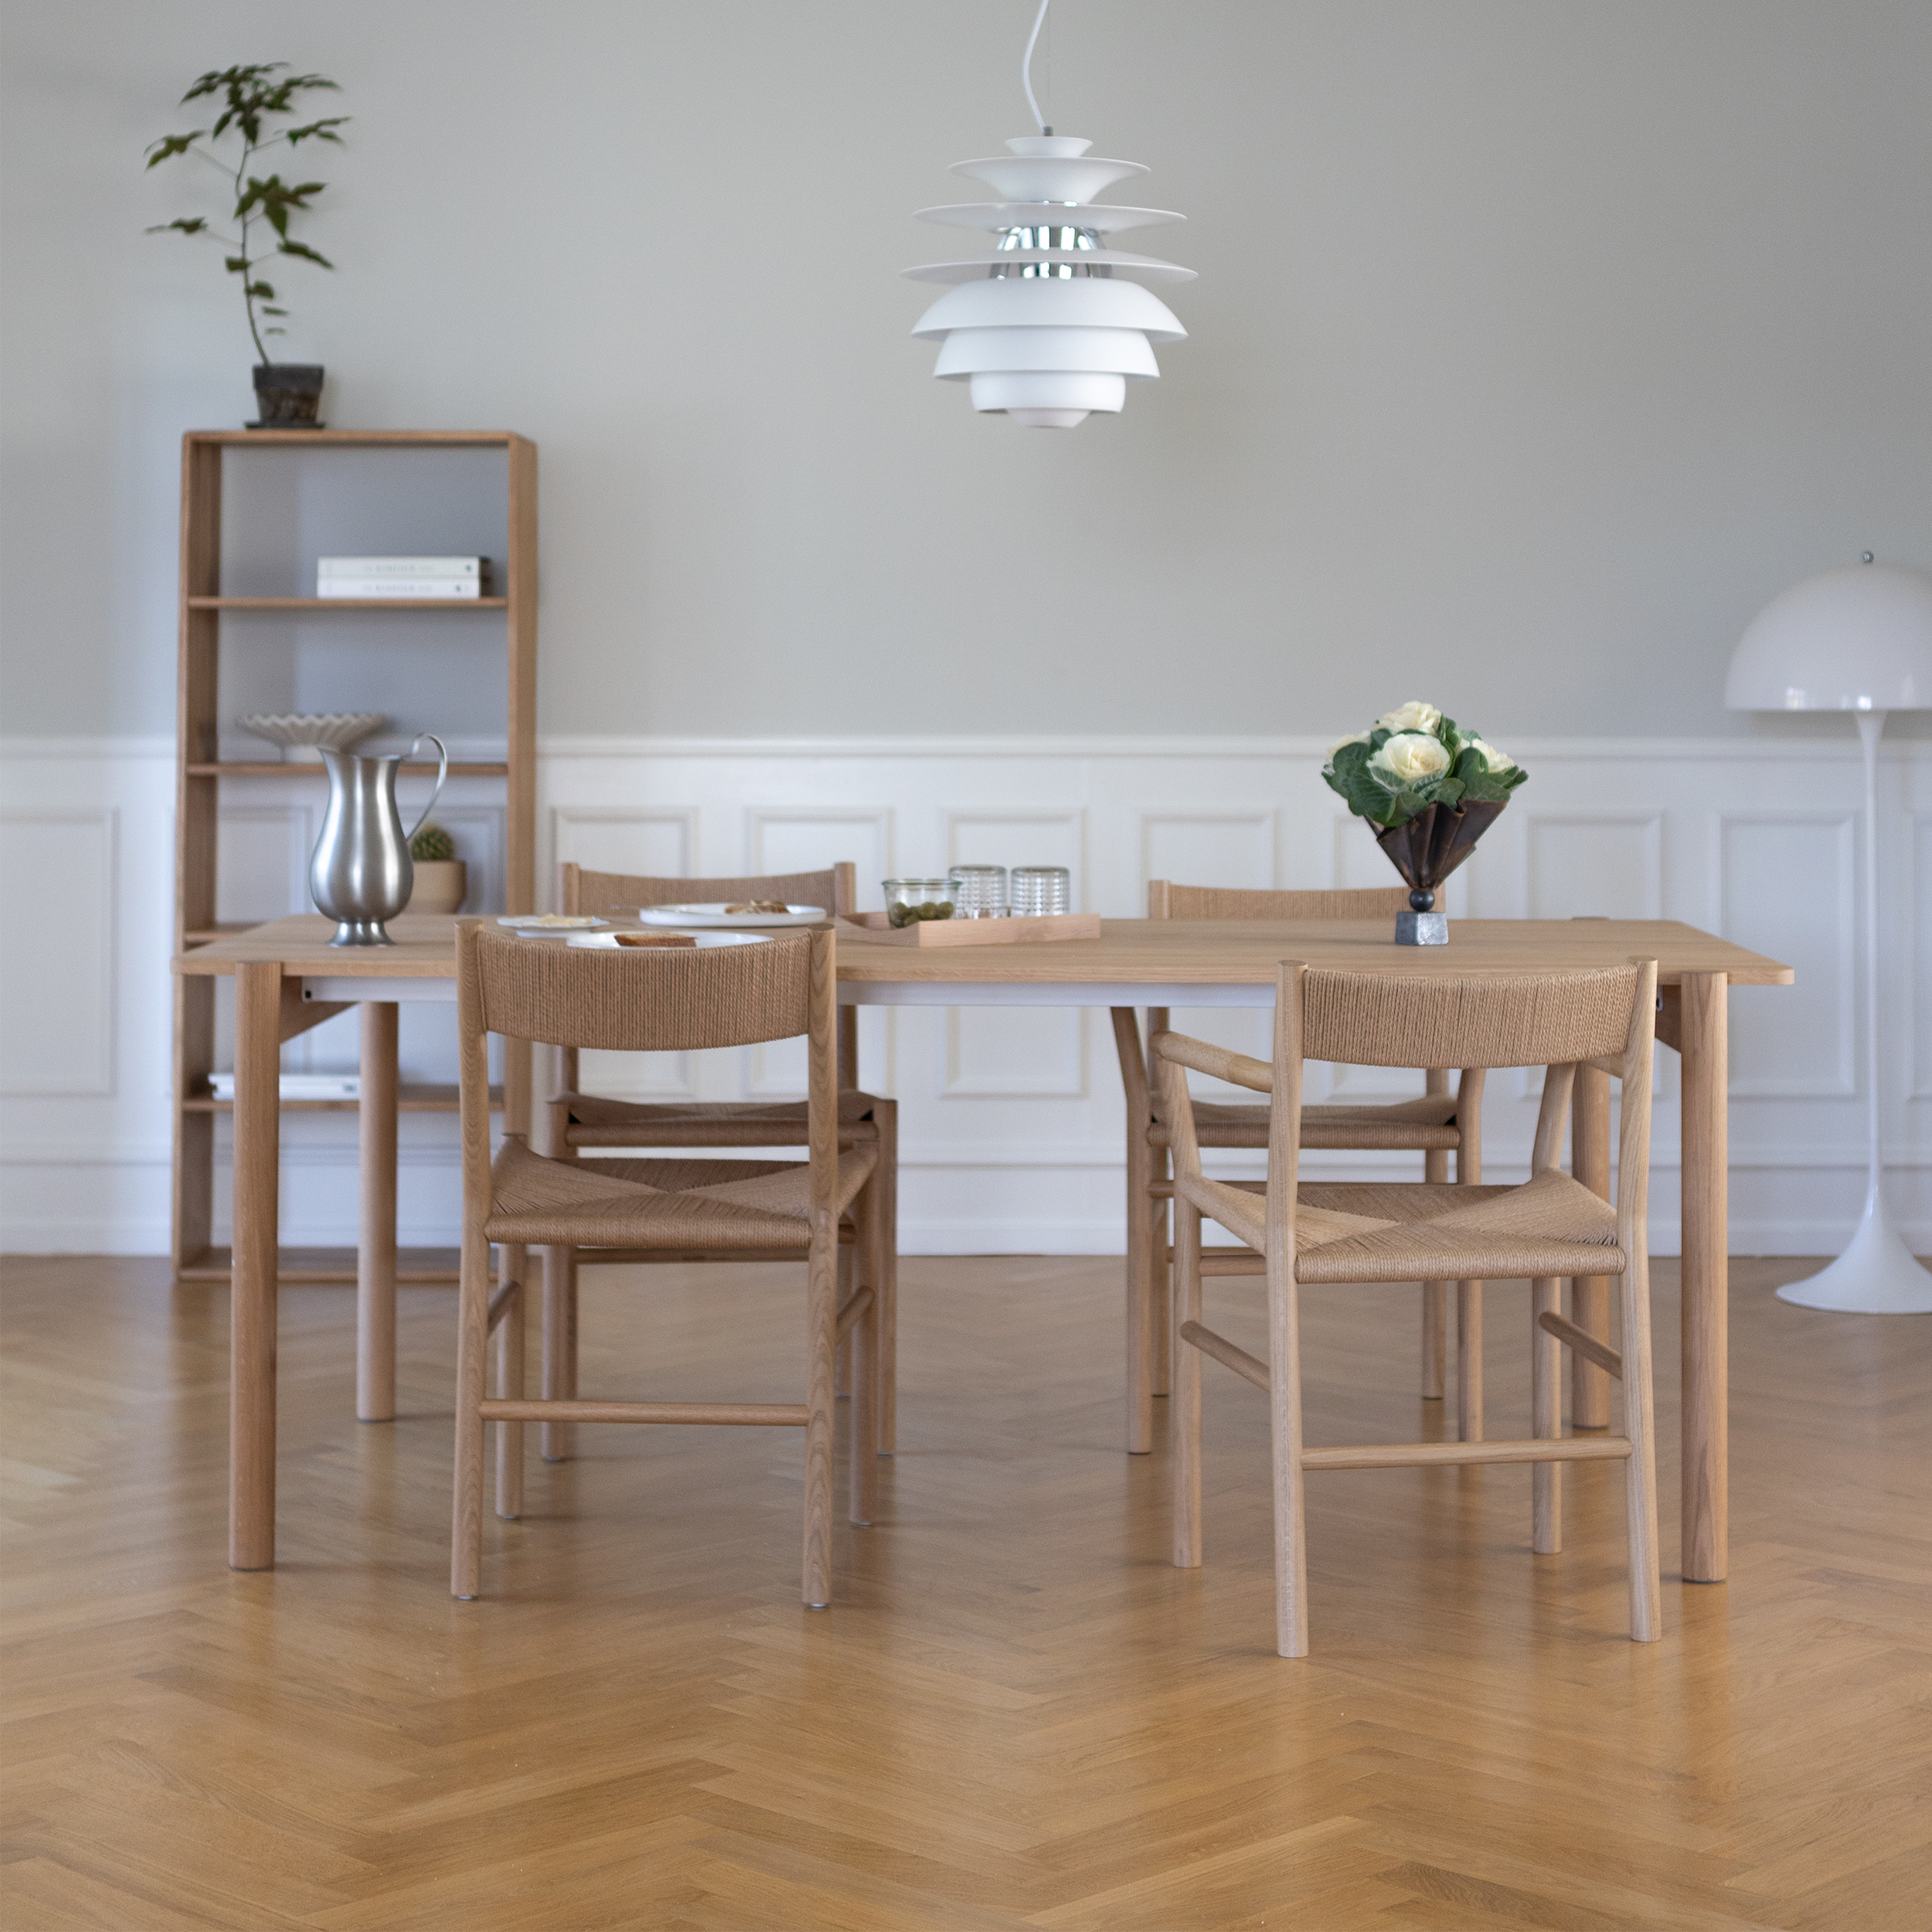 THY - Rectangular dining table, Oak frame